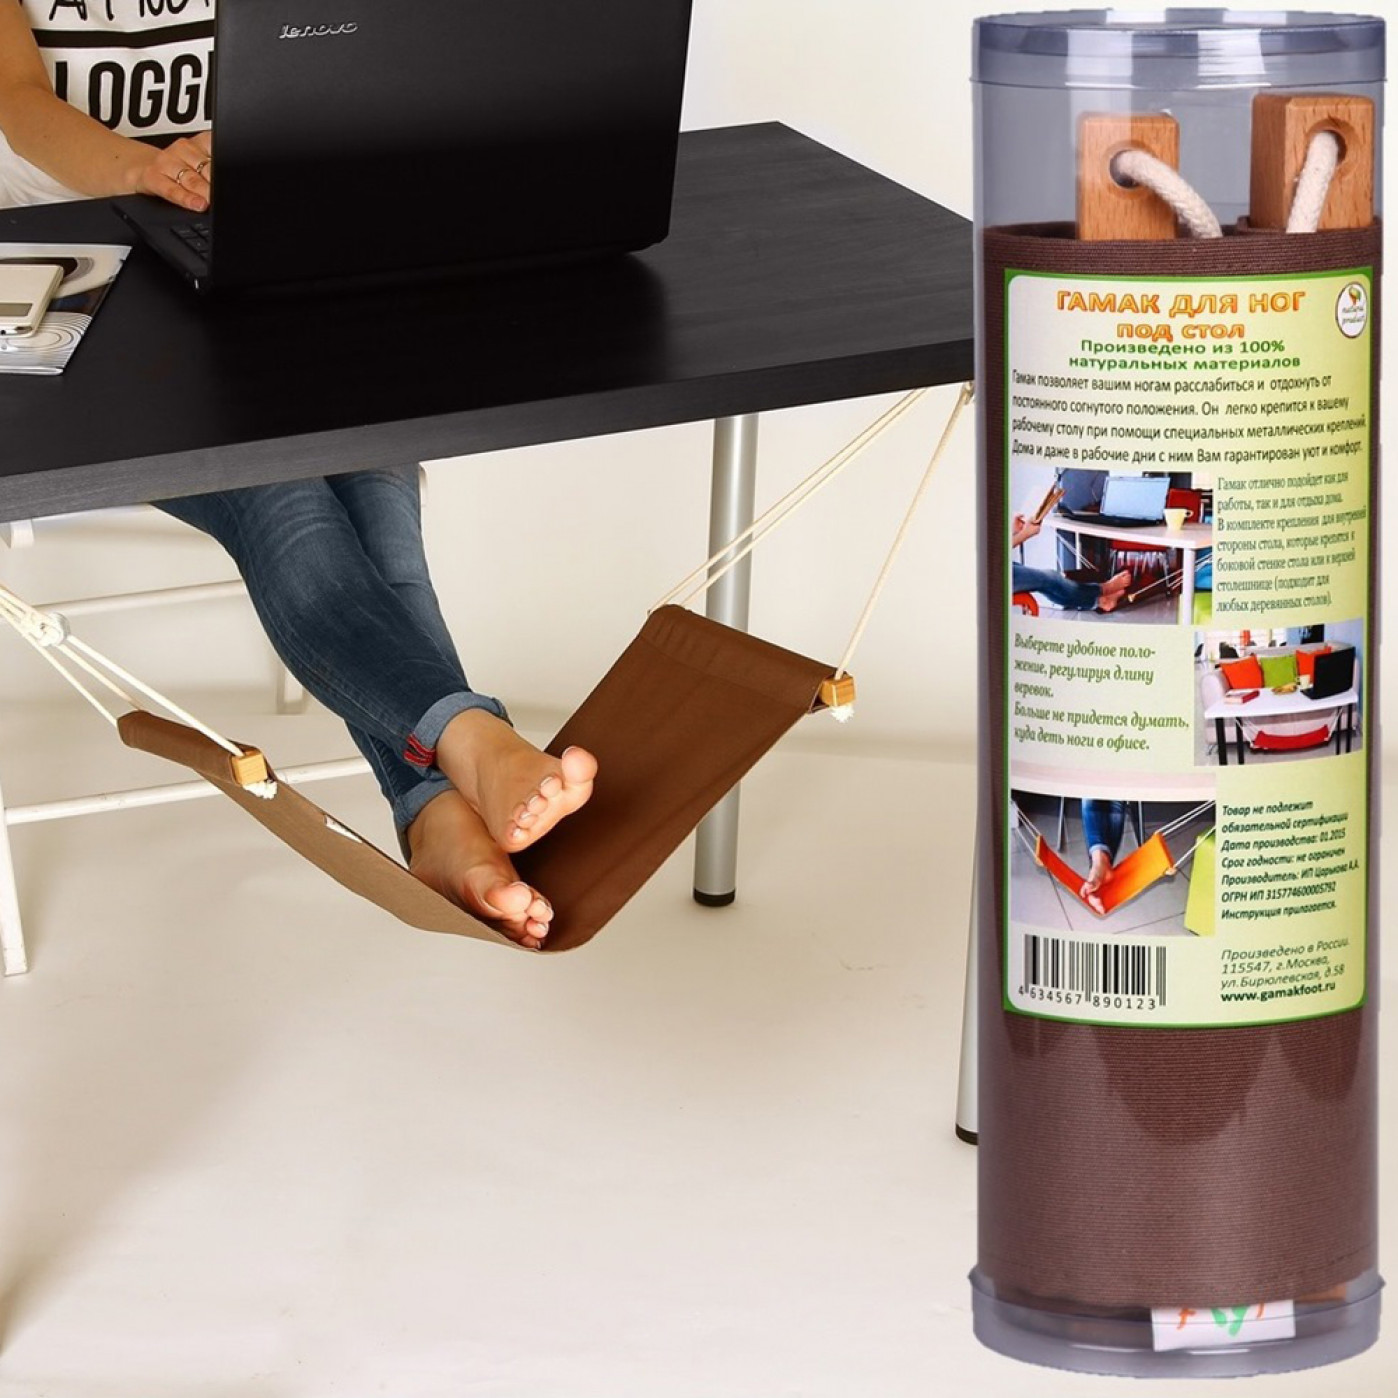 Гамак для ног Light по цене 990 ₽ в интернет-магазине подарков MagicMag